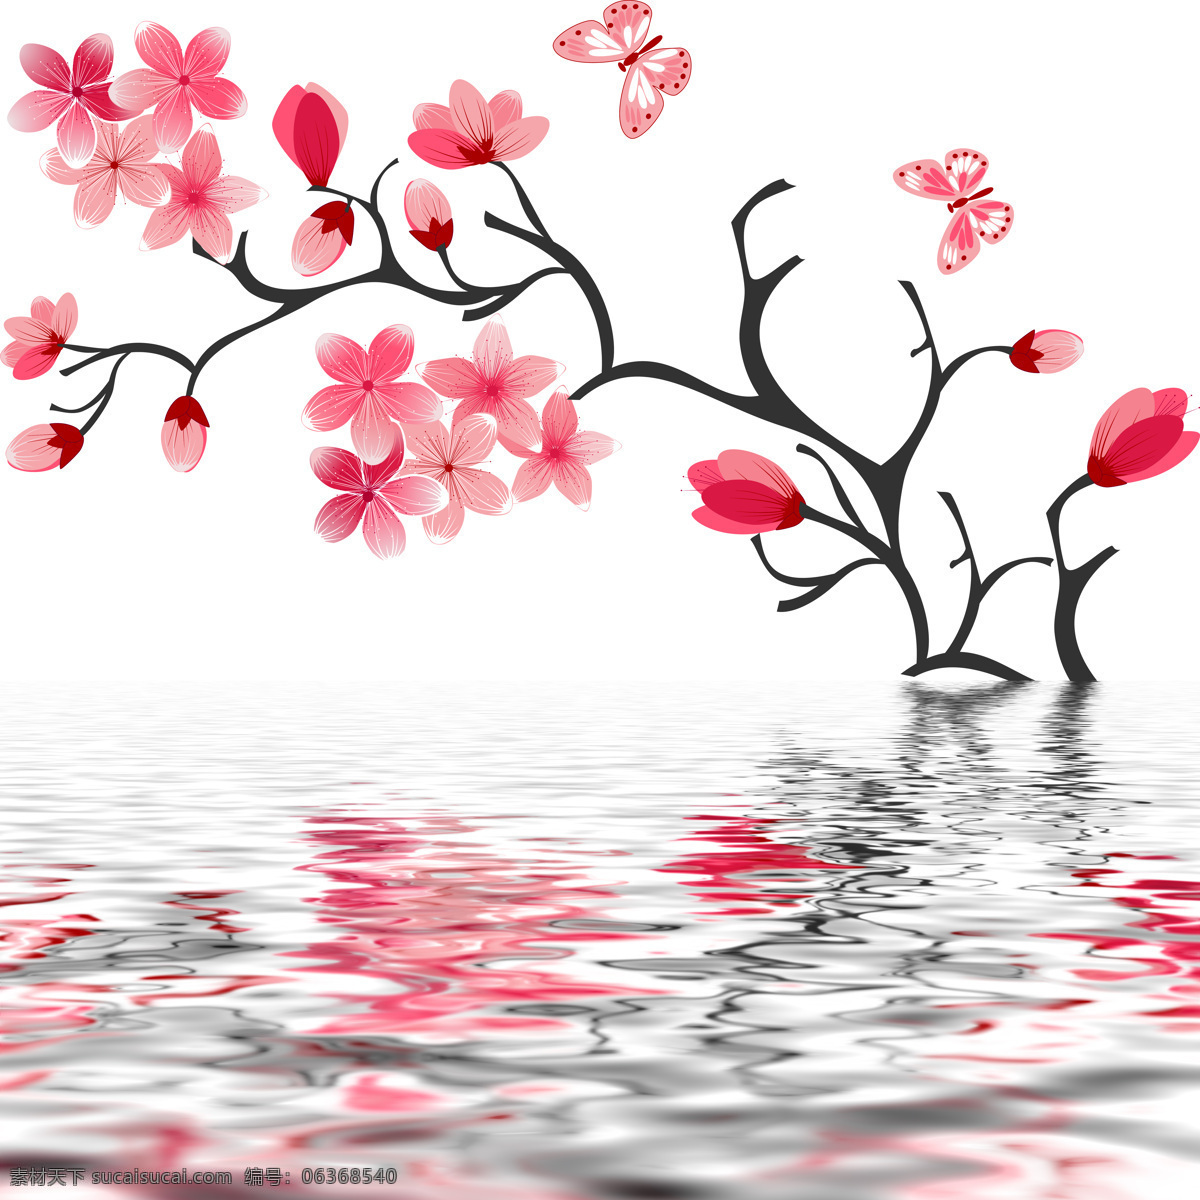 粉色 花卉 水中 倒影